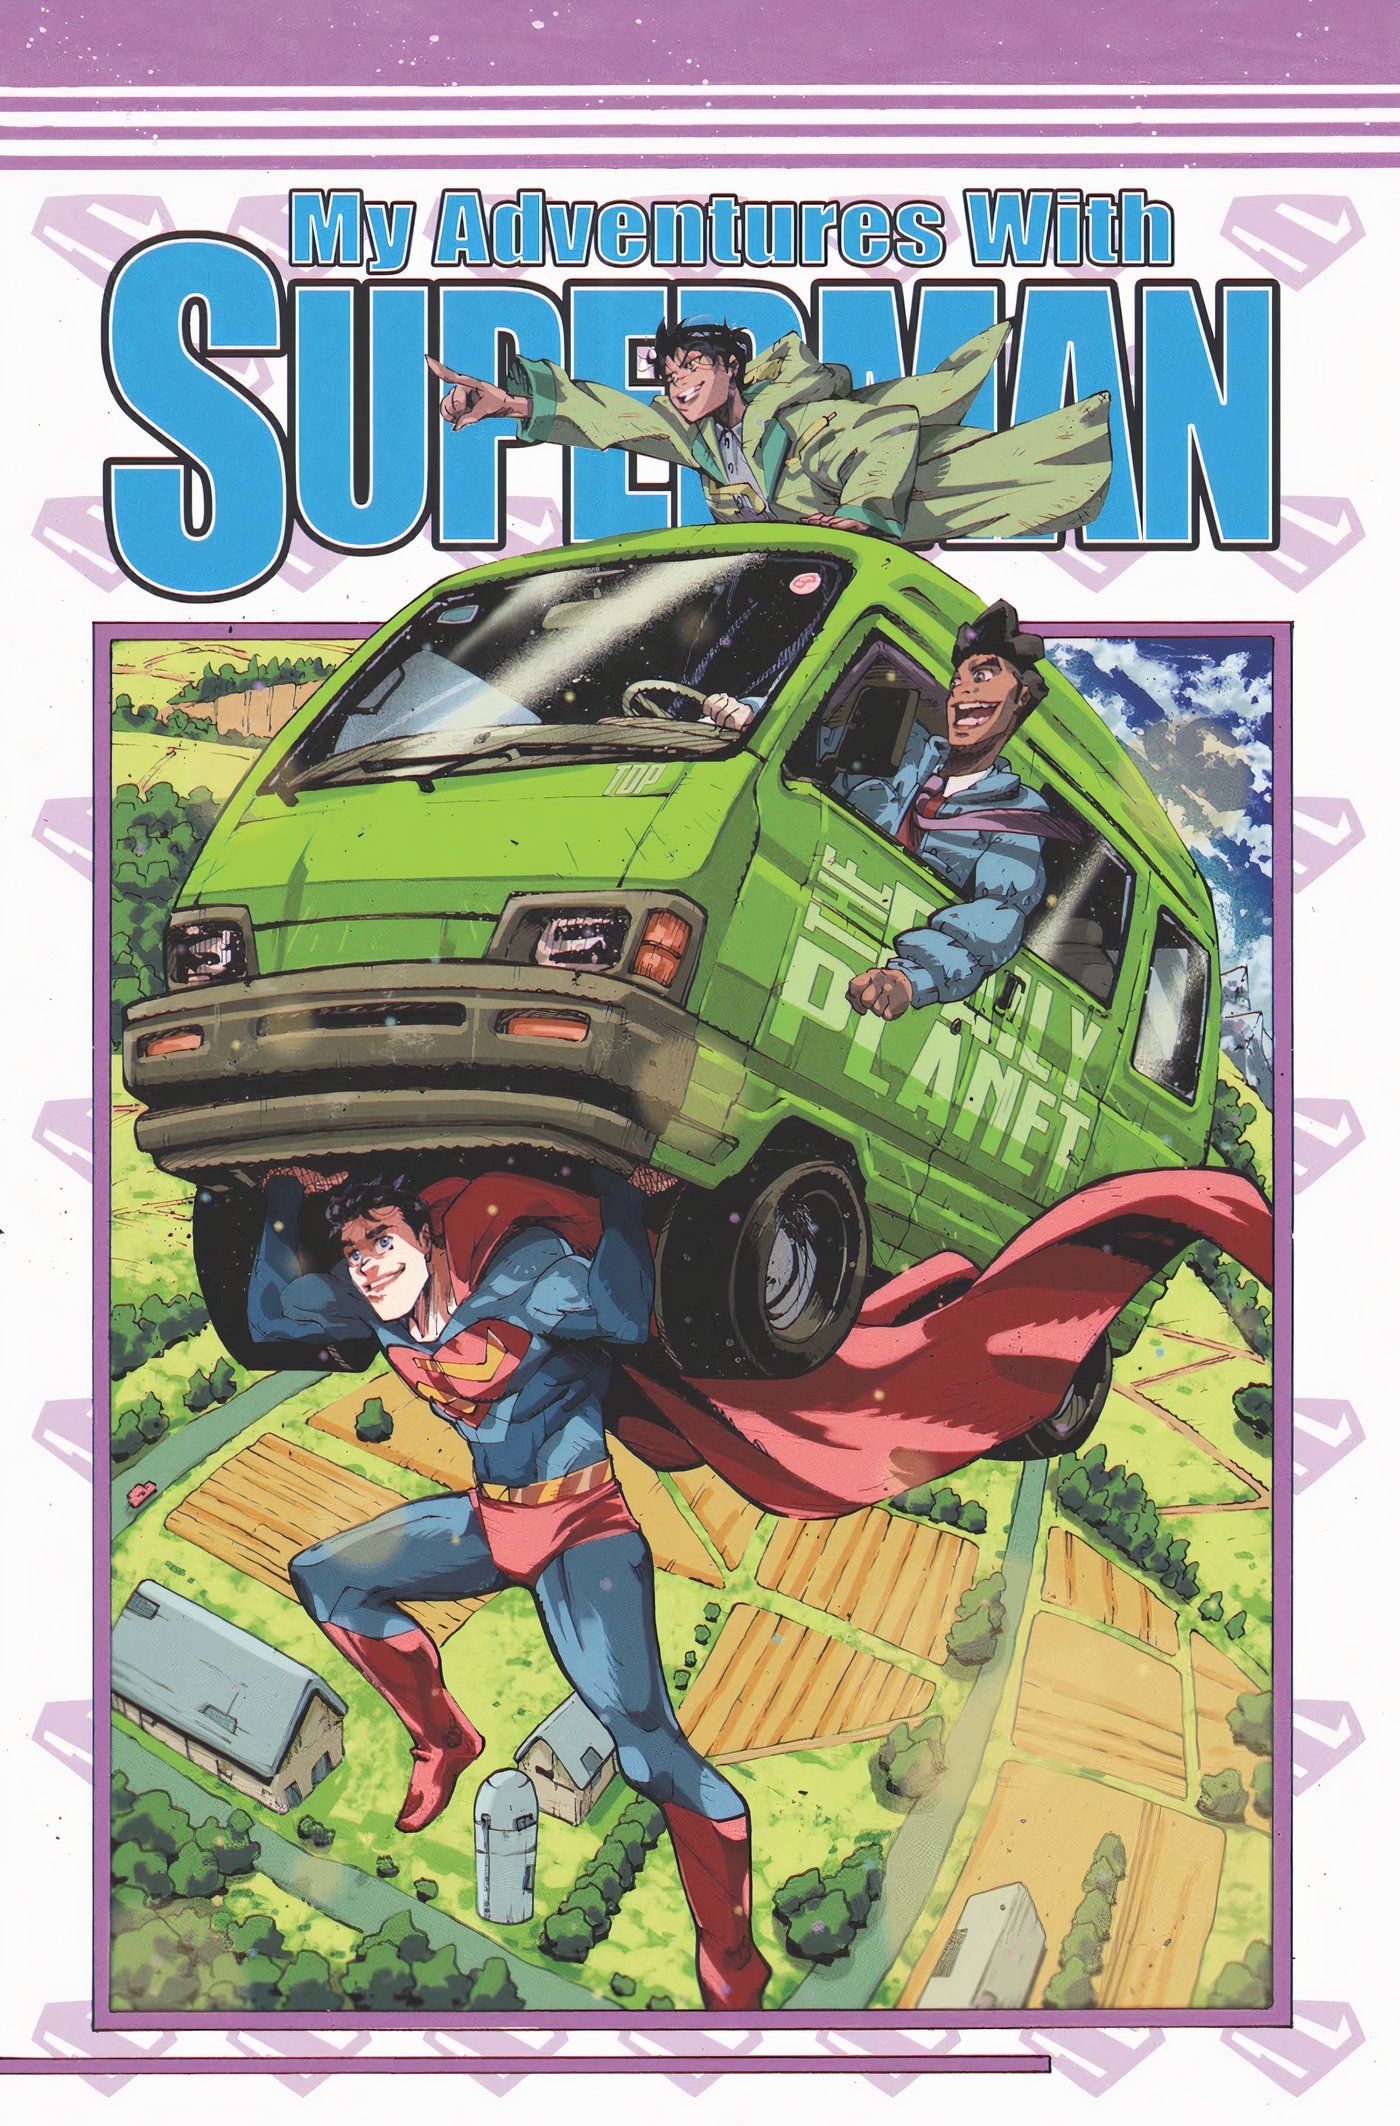 Superman carrega uma van com Lois e Jimmy em uma homenagem a Dragon Ball e Toriyama.